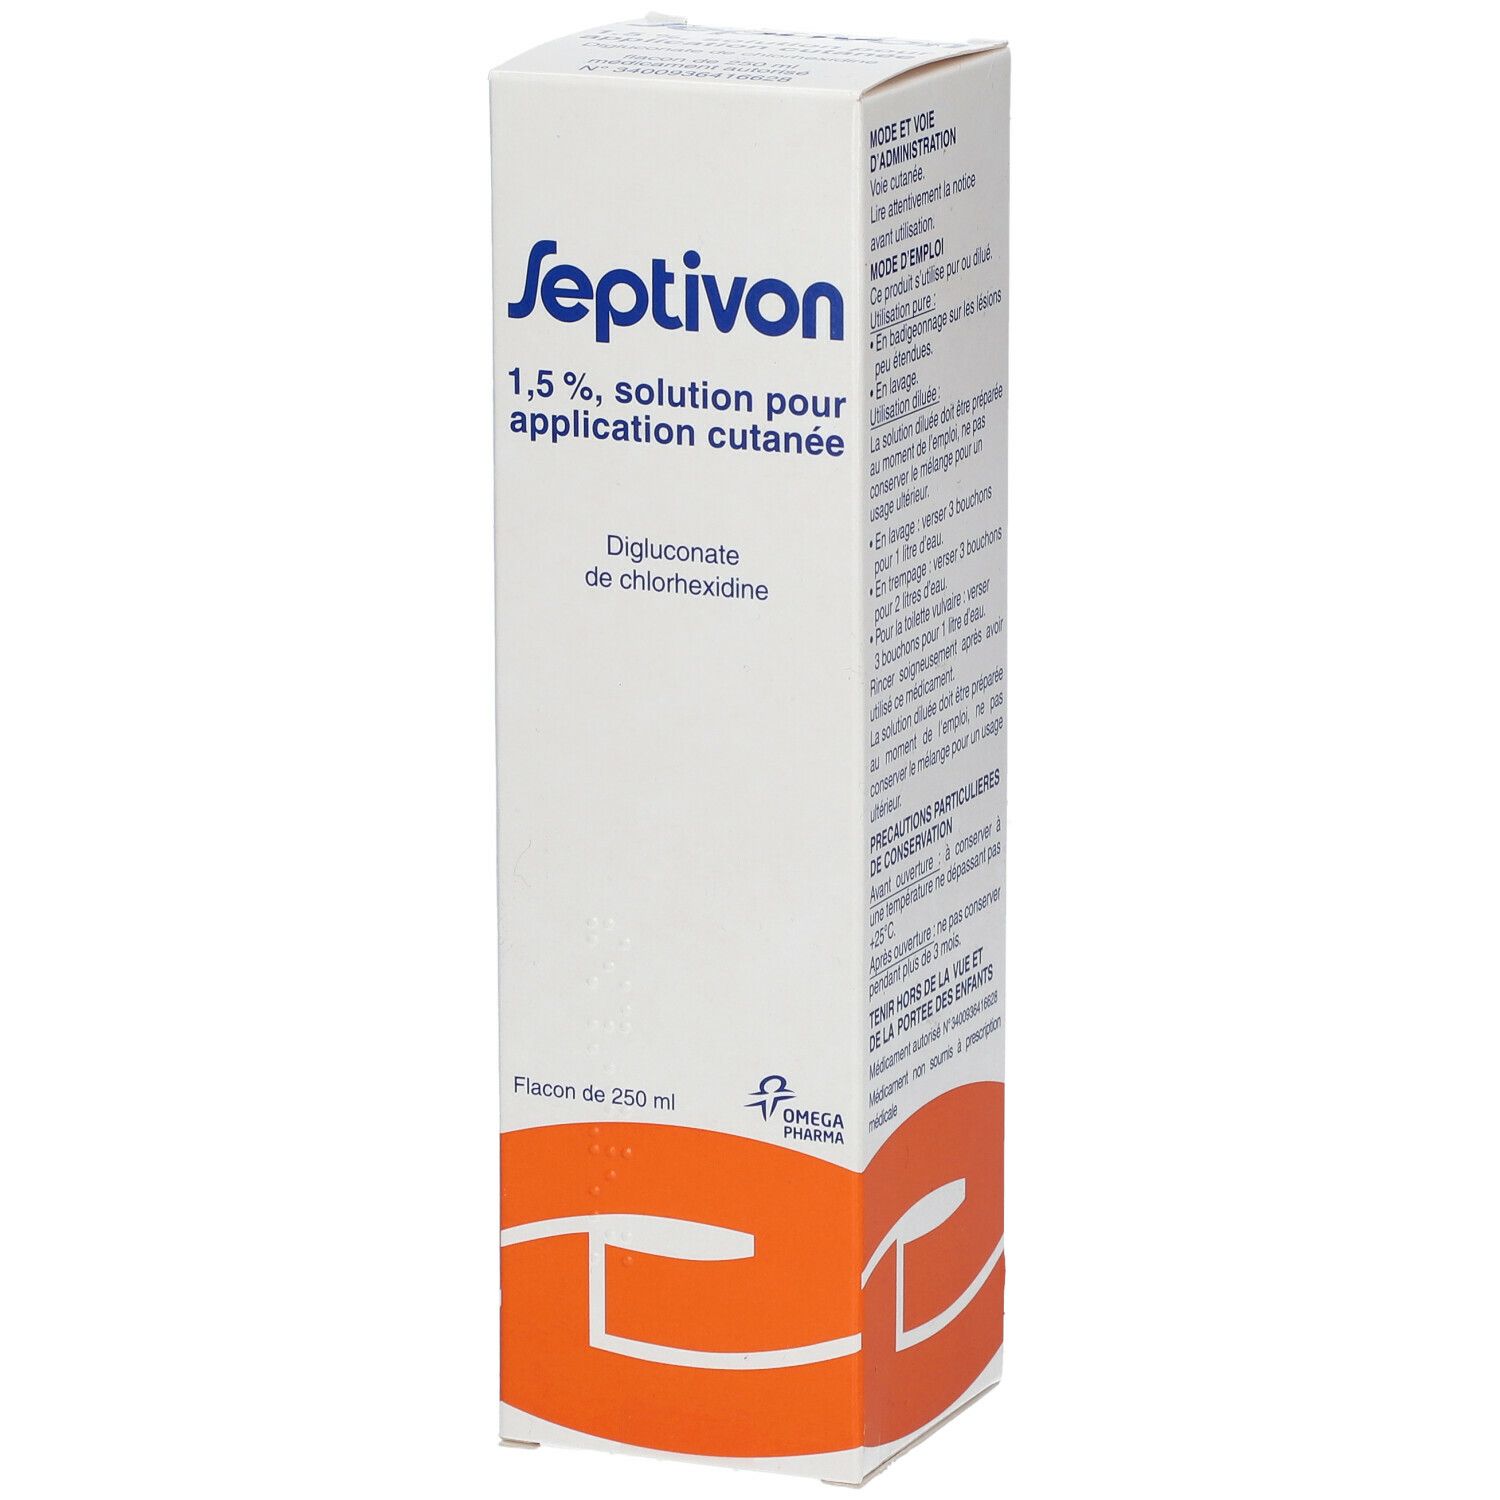 Omega Pharma Septivon